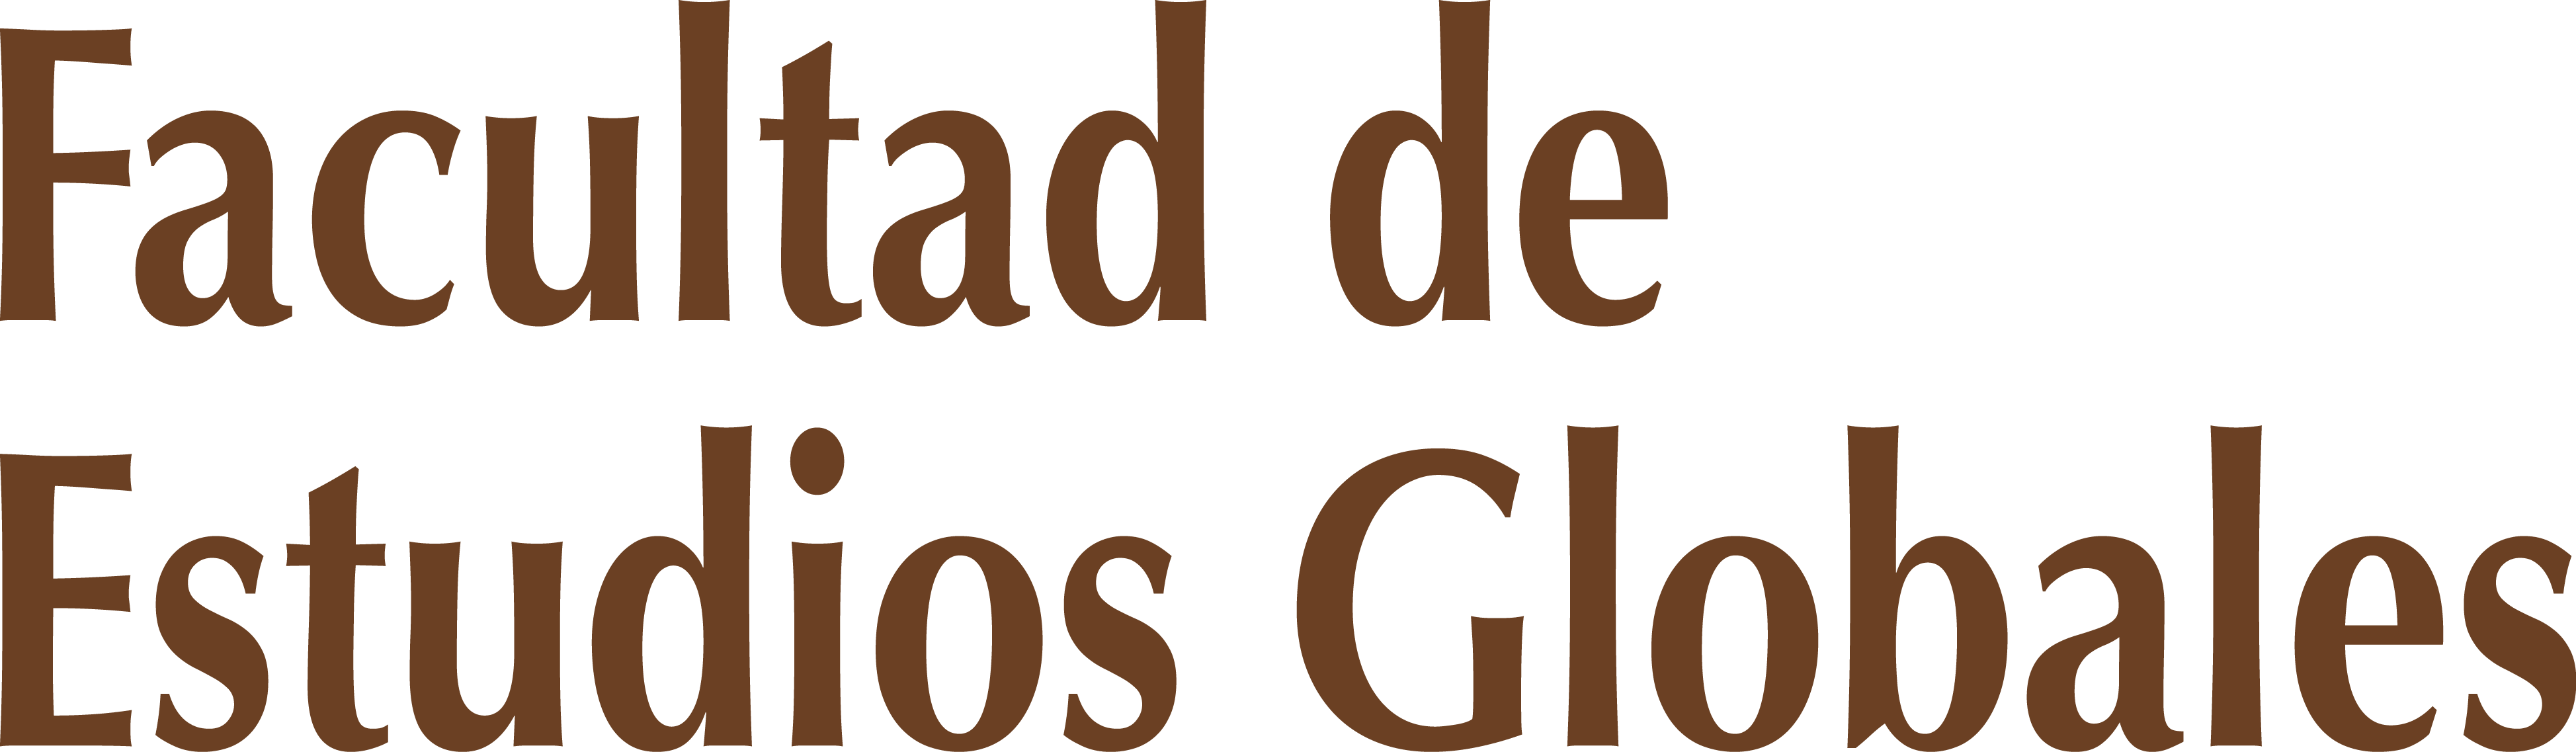 Logo Facultad de Estudios Globales